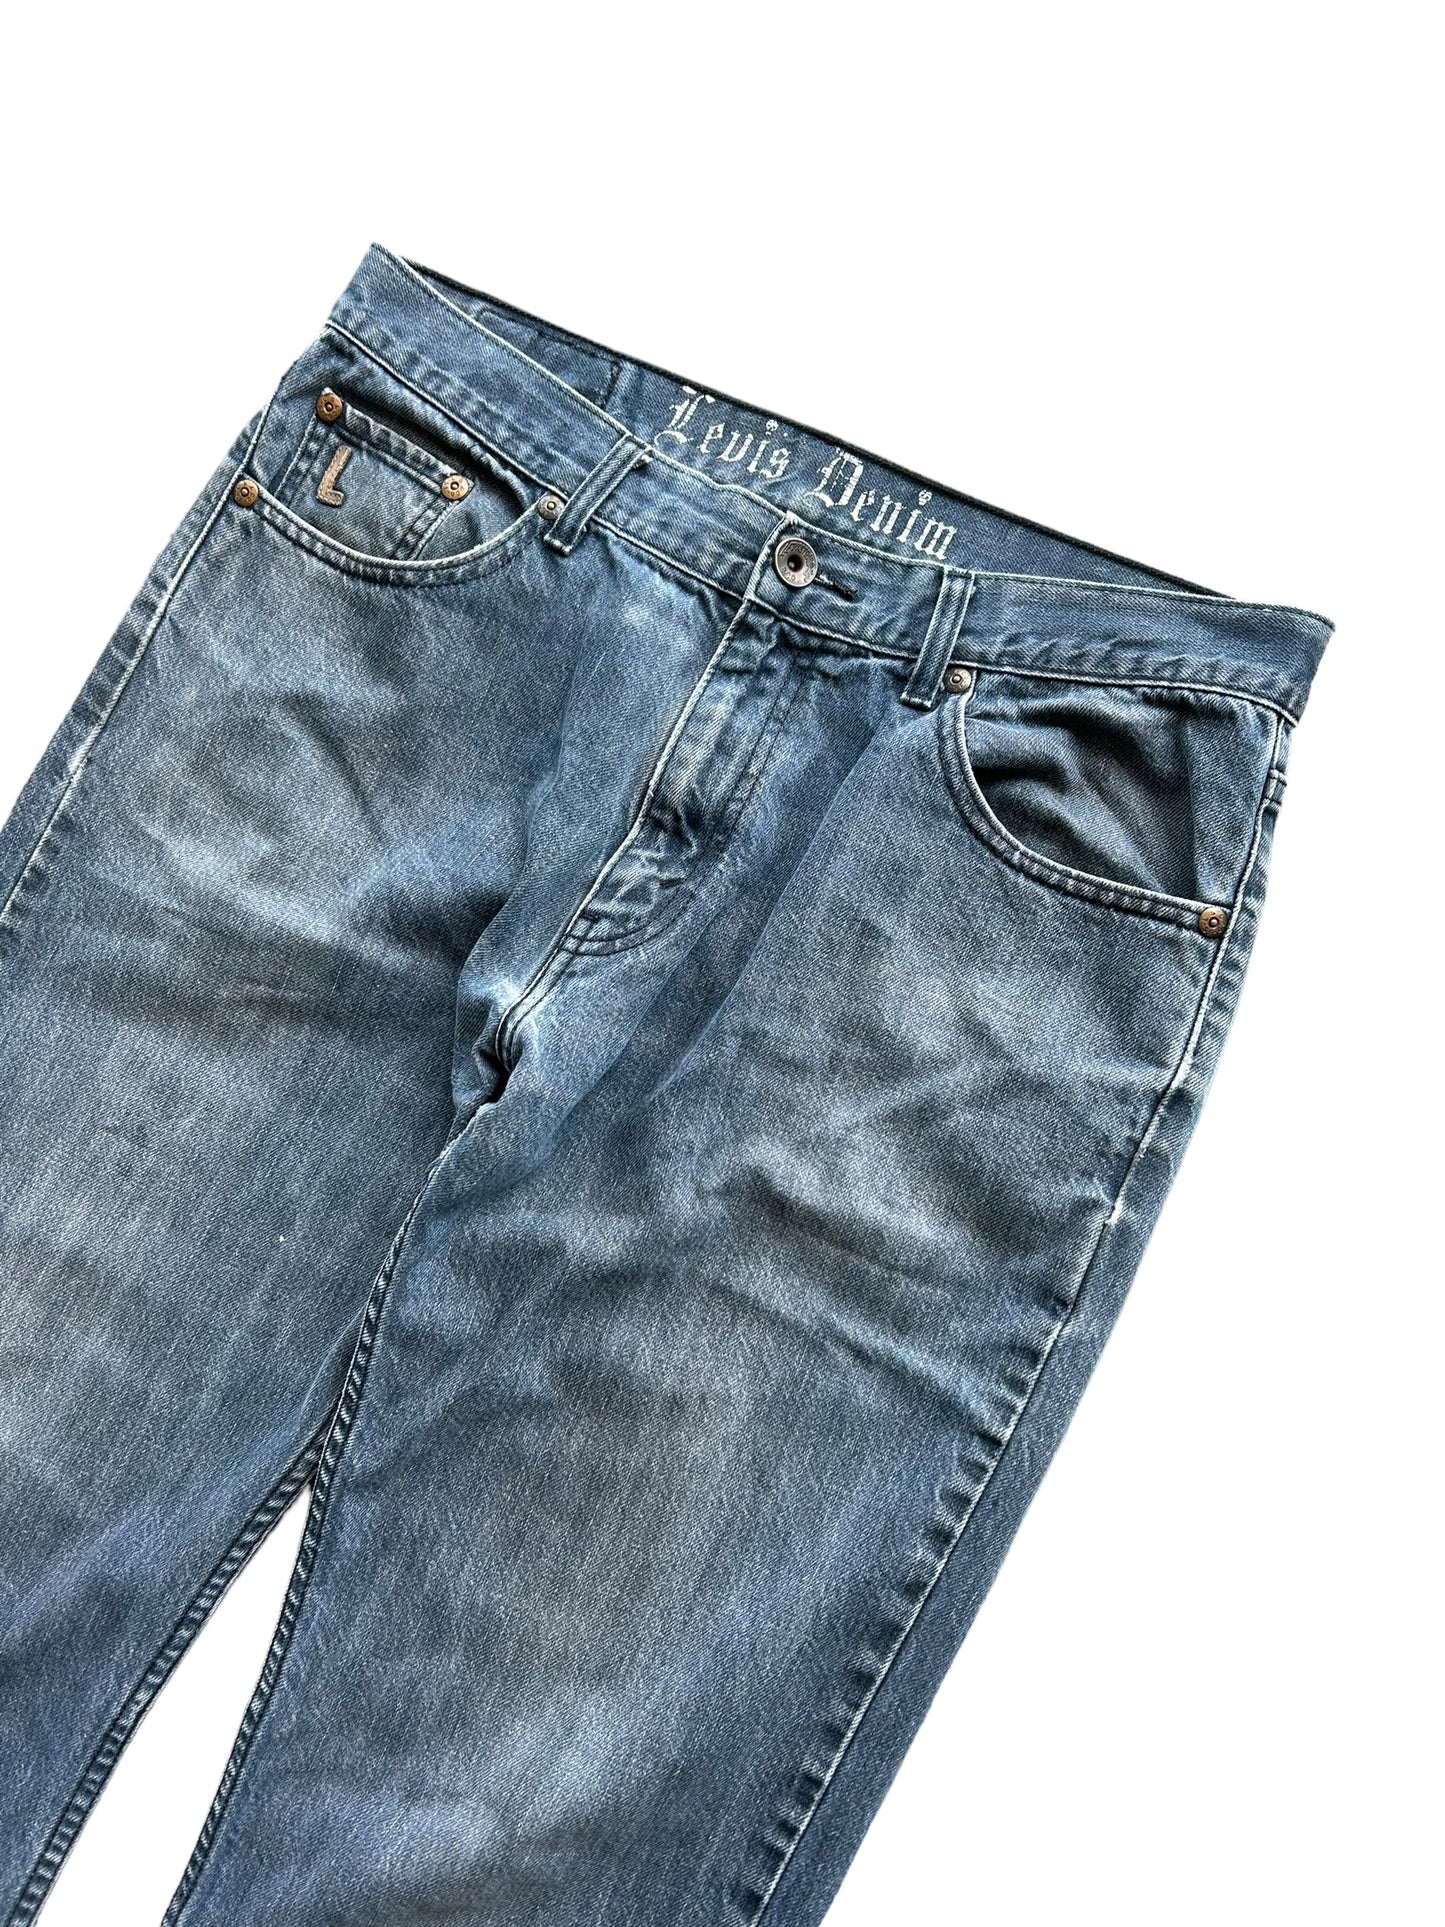 Vintage Levis 503 Denim Jeans